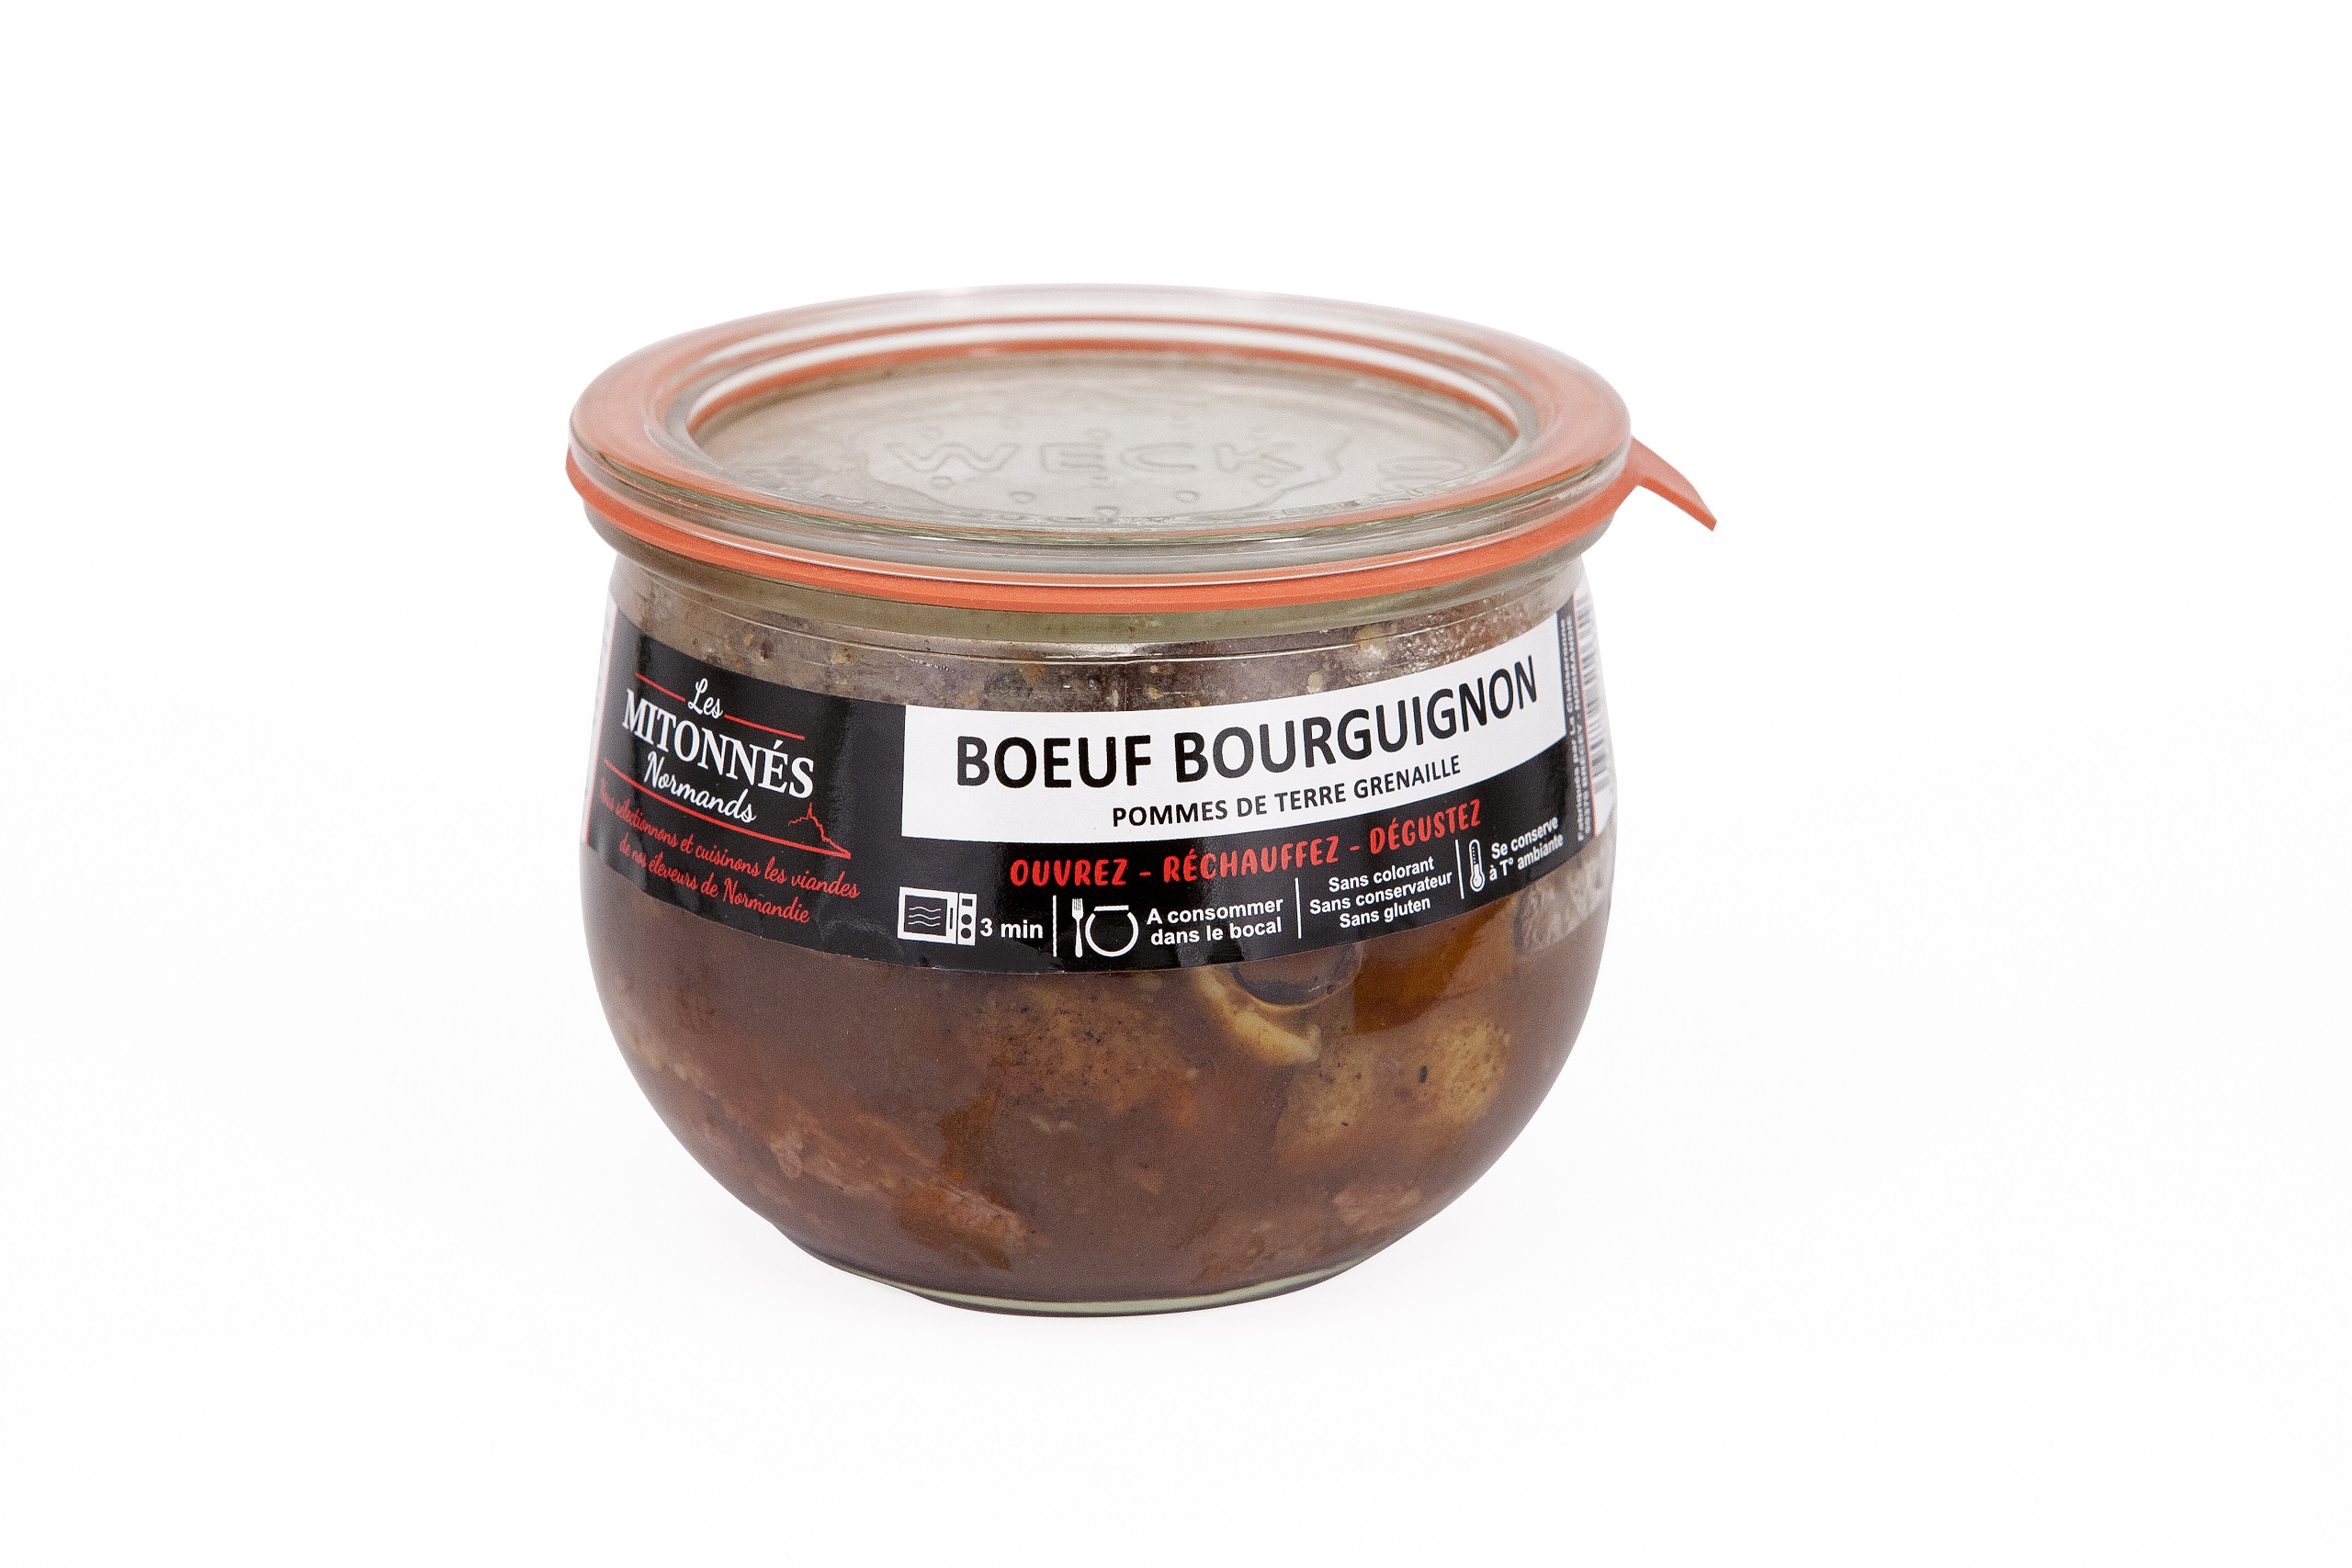 Poire de boeuf sauce périgourdine pommes grenailles confites au thym -  Beauvallet : La viande, c'est notre métier